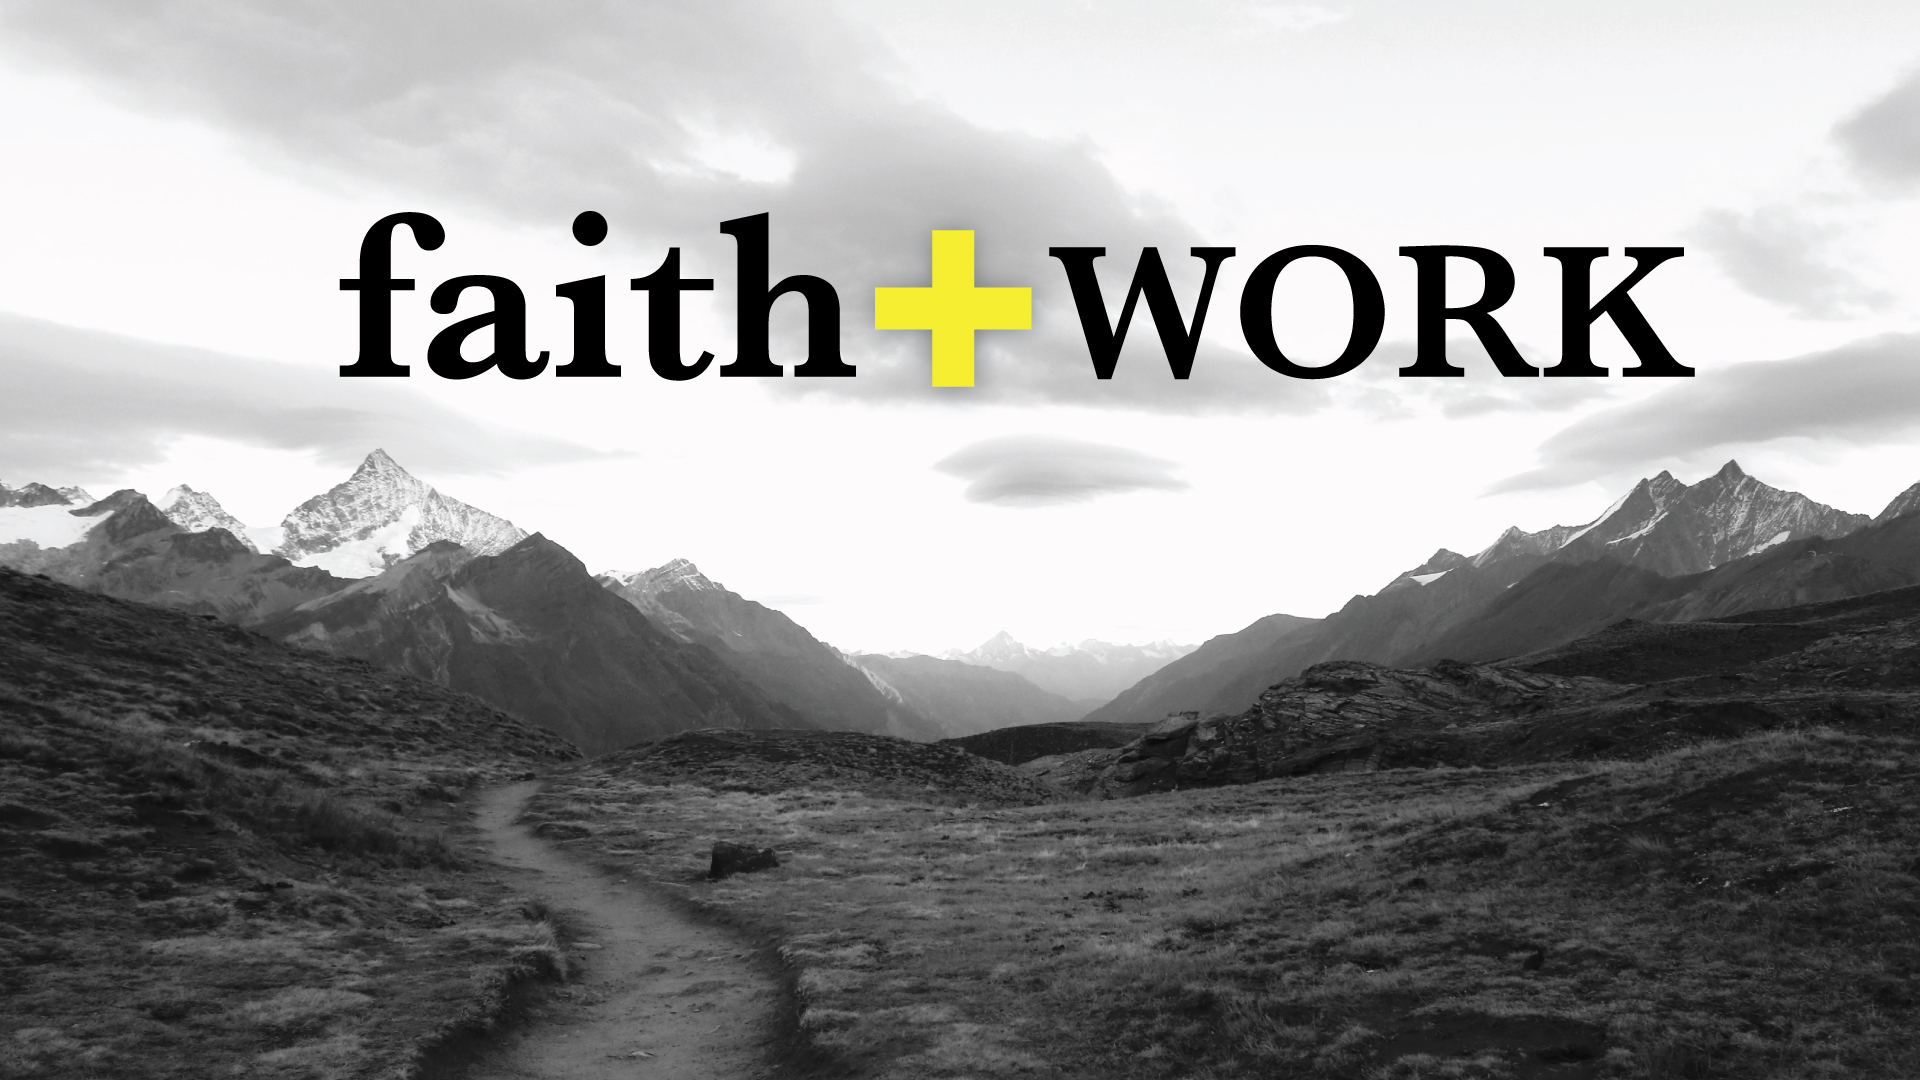 Faith+Work: Calling